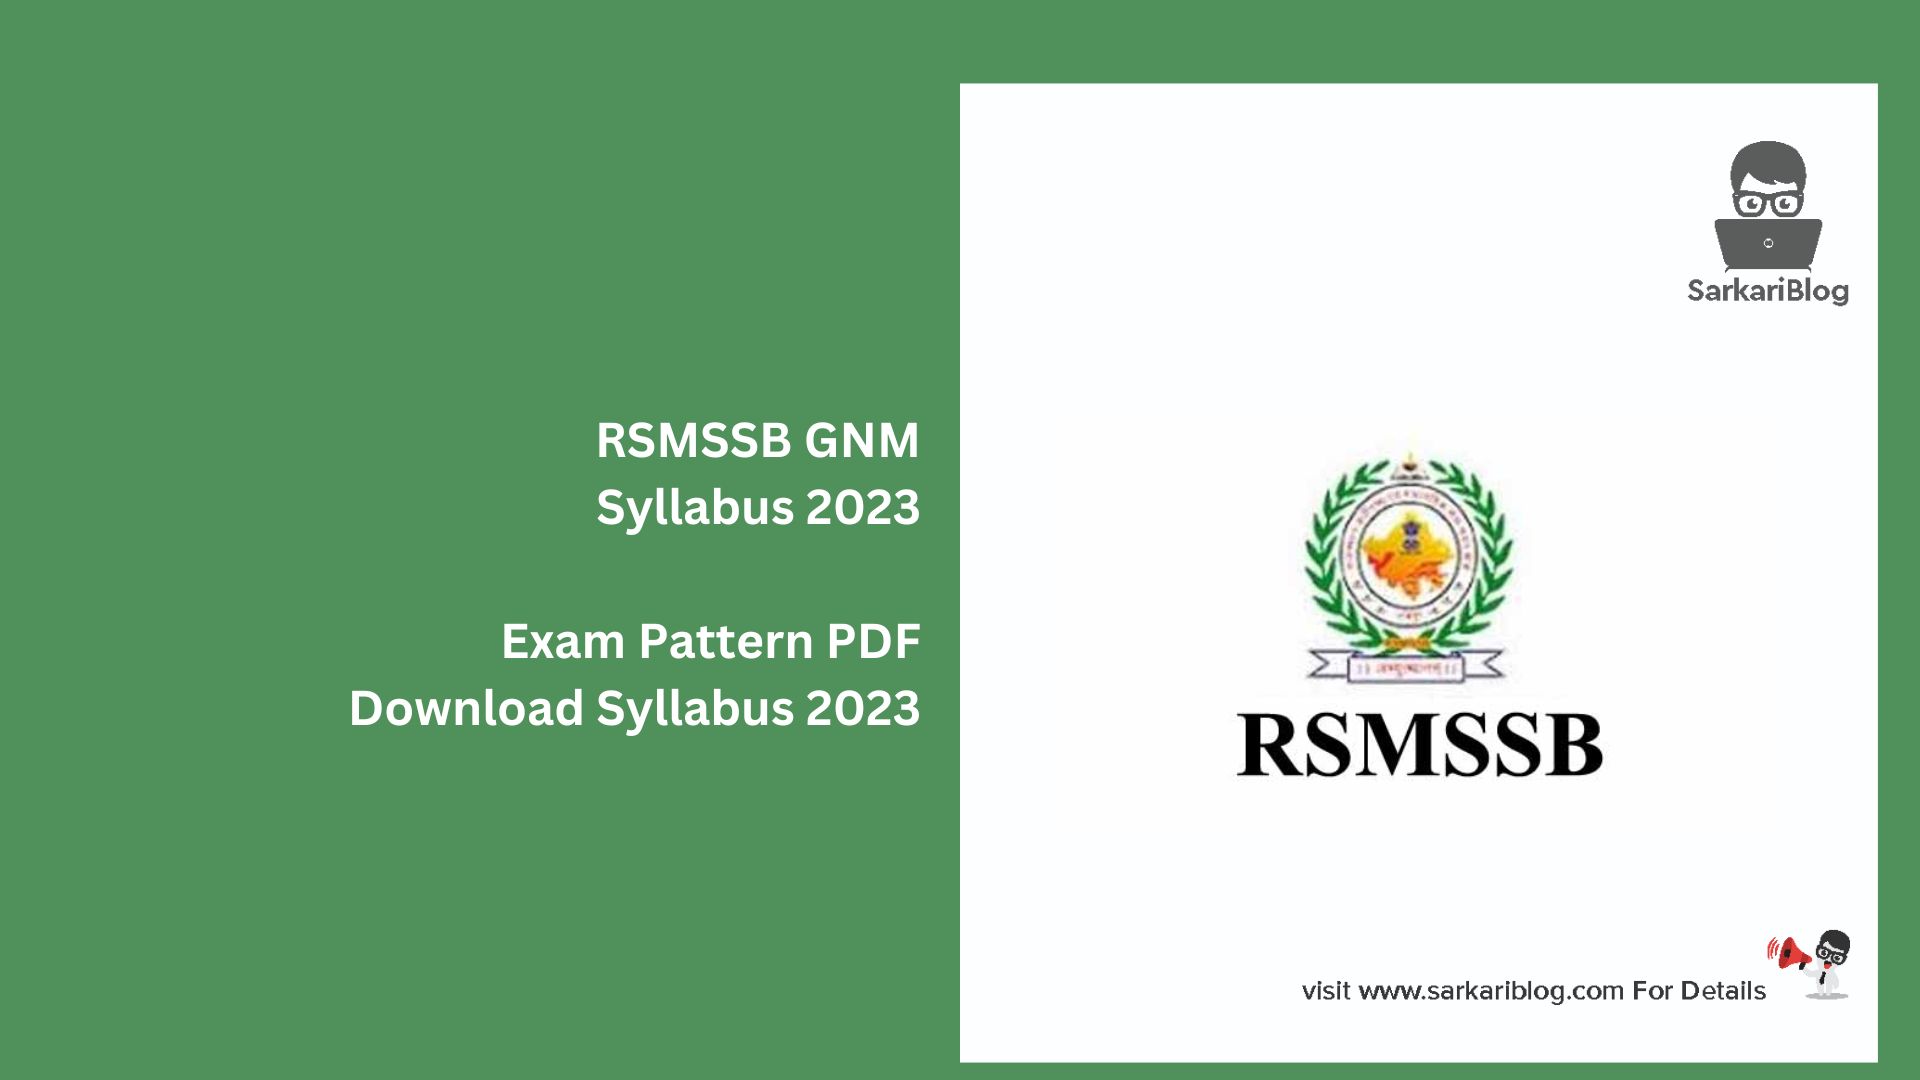 RSMSSB GNM Syllabus 2023